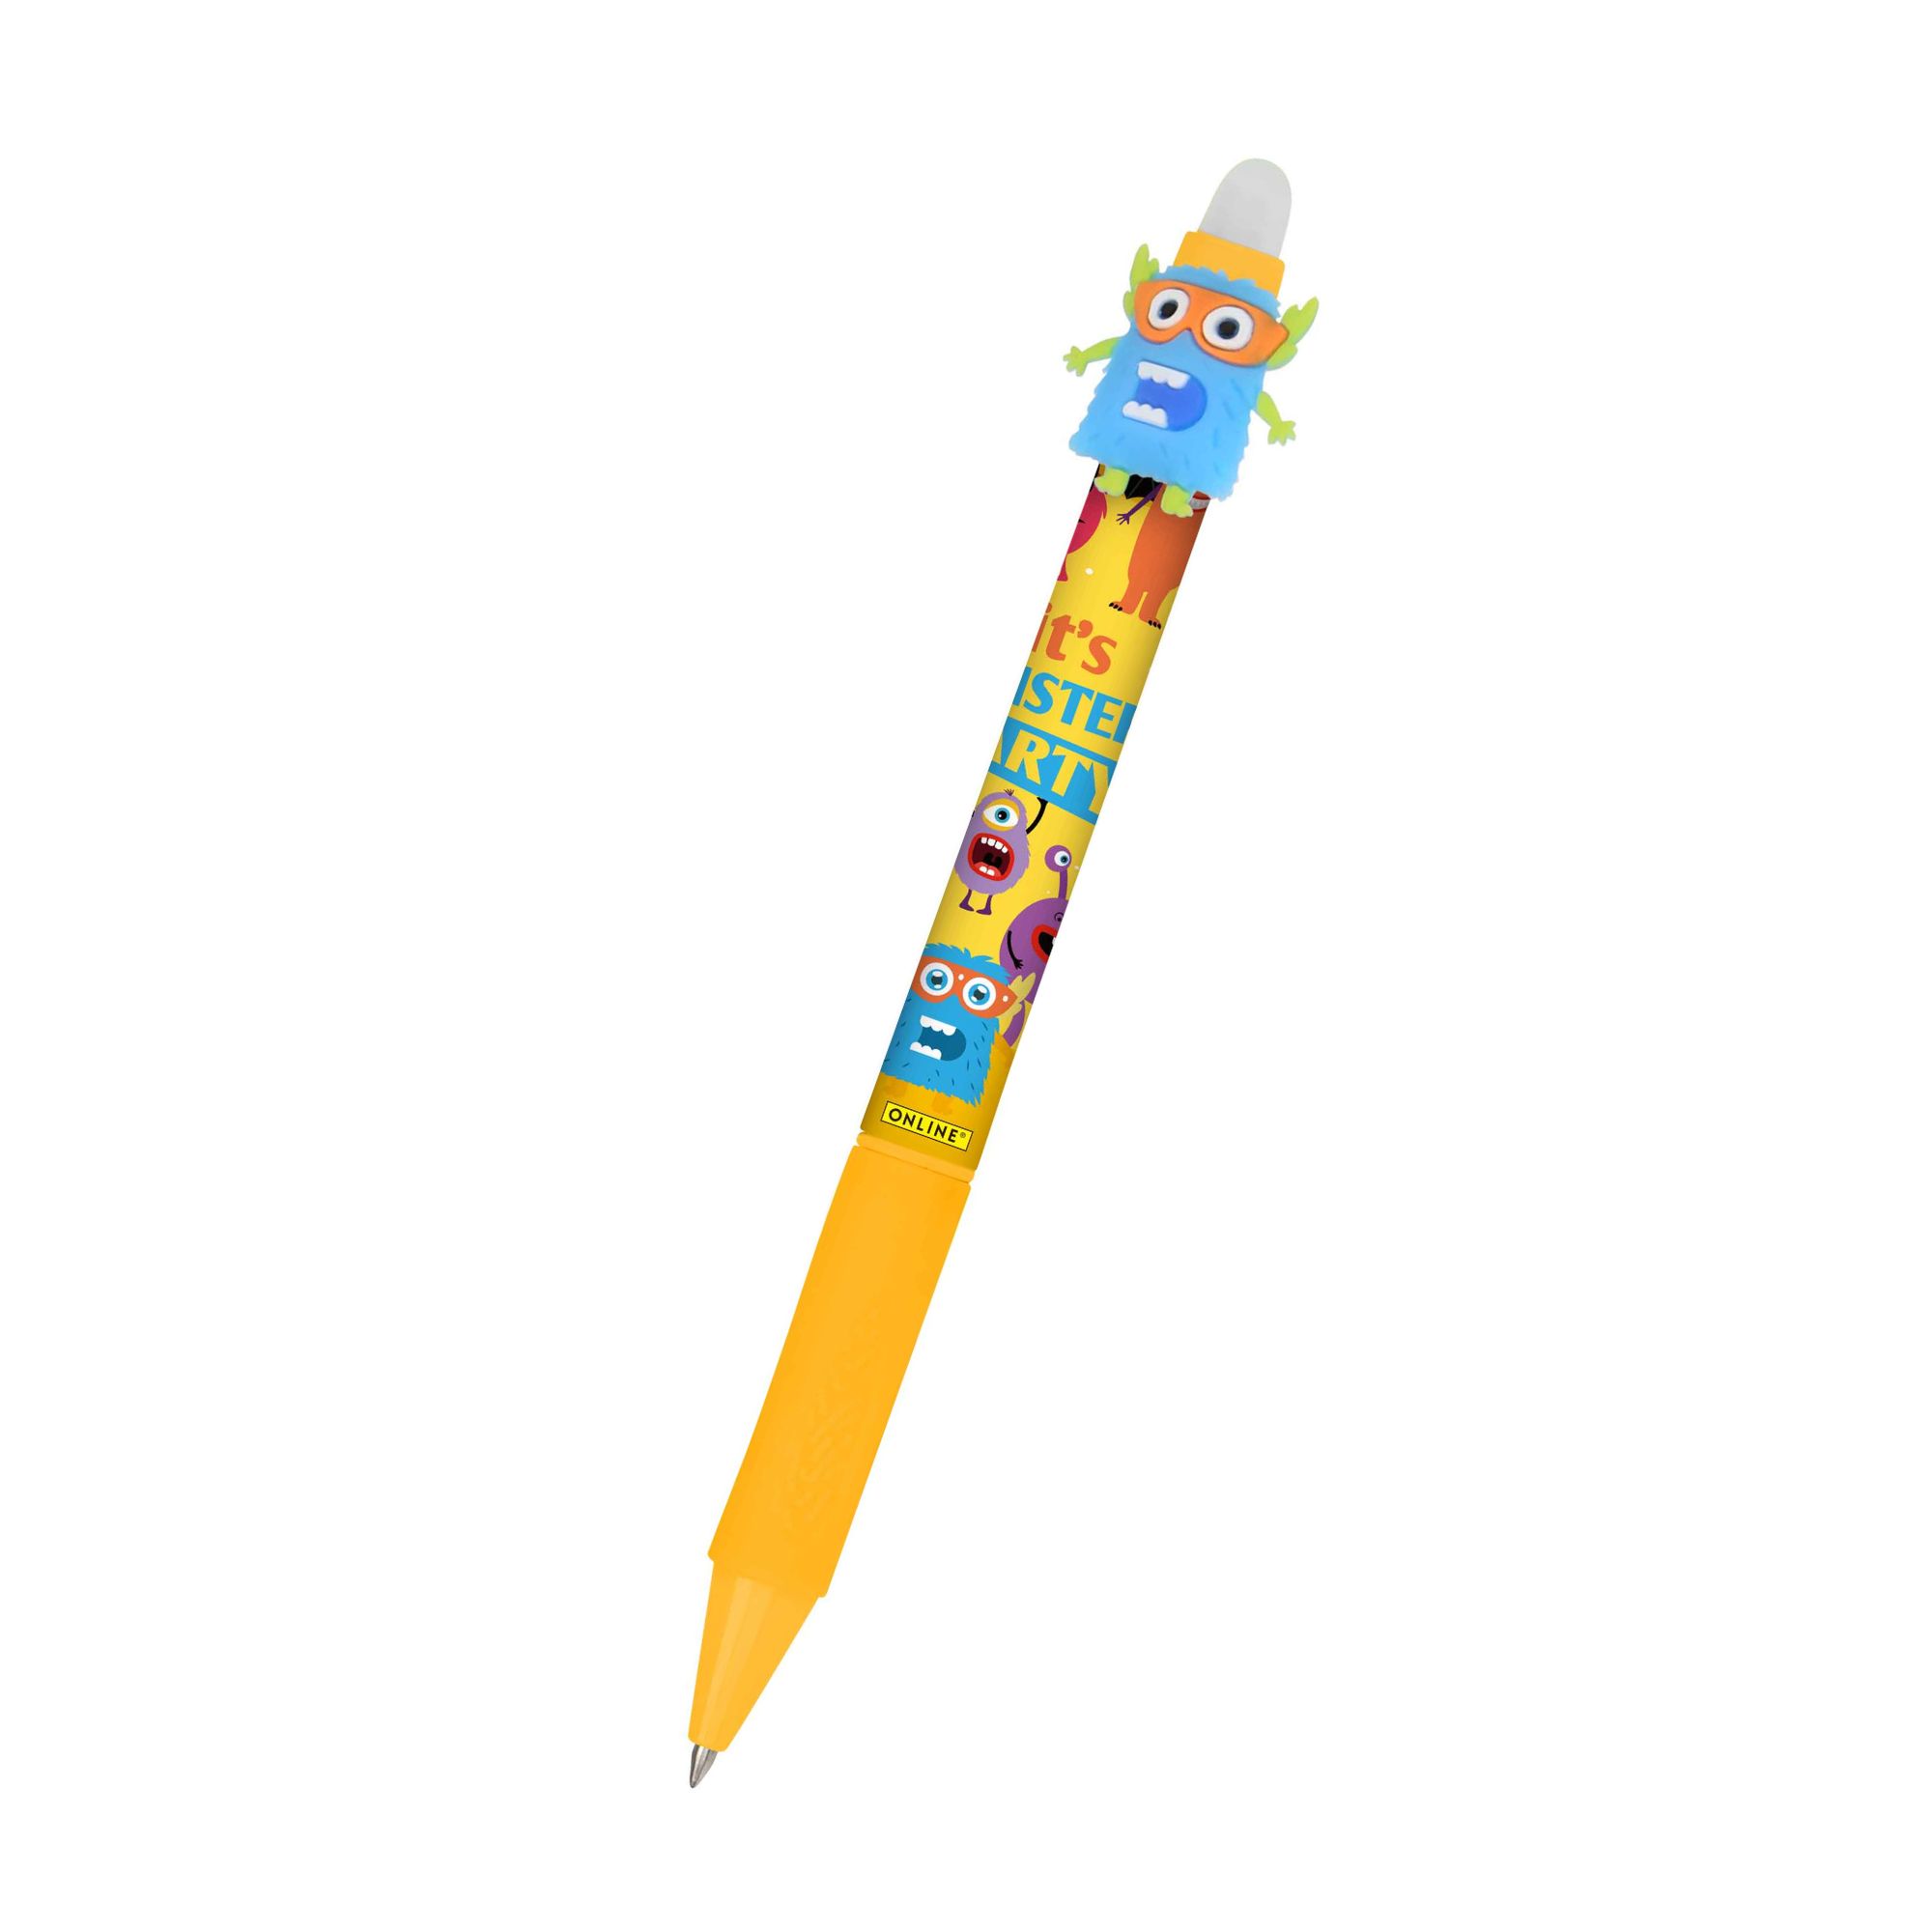 Unser radierbarer Gelschreiber magiXX Fun Space für Kinder mit spannenden Designs